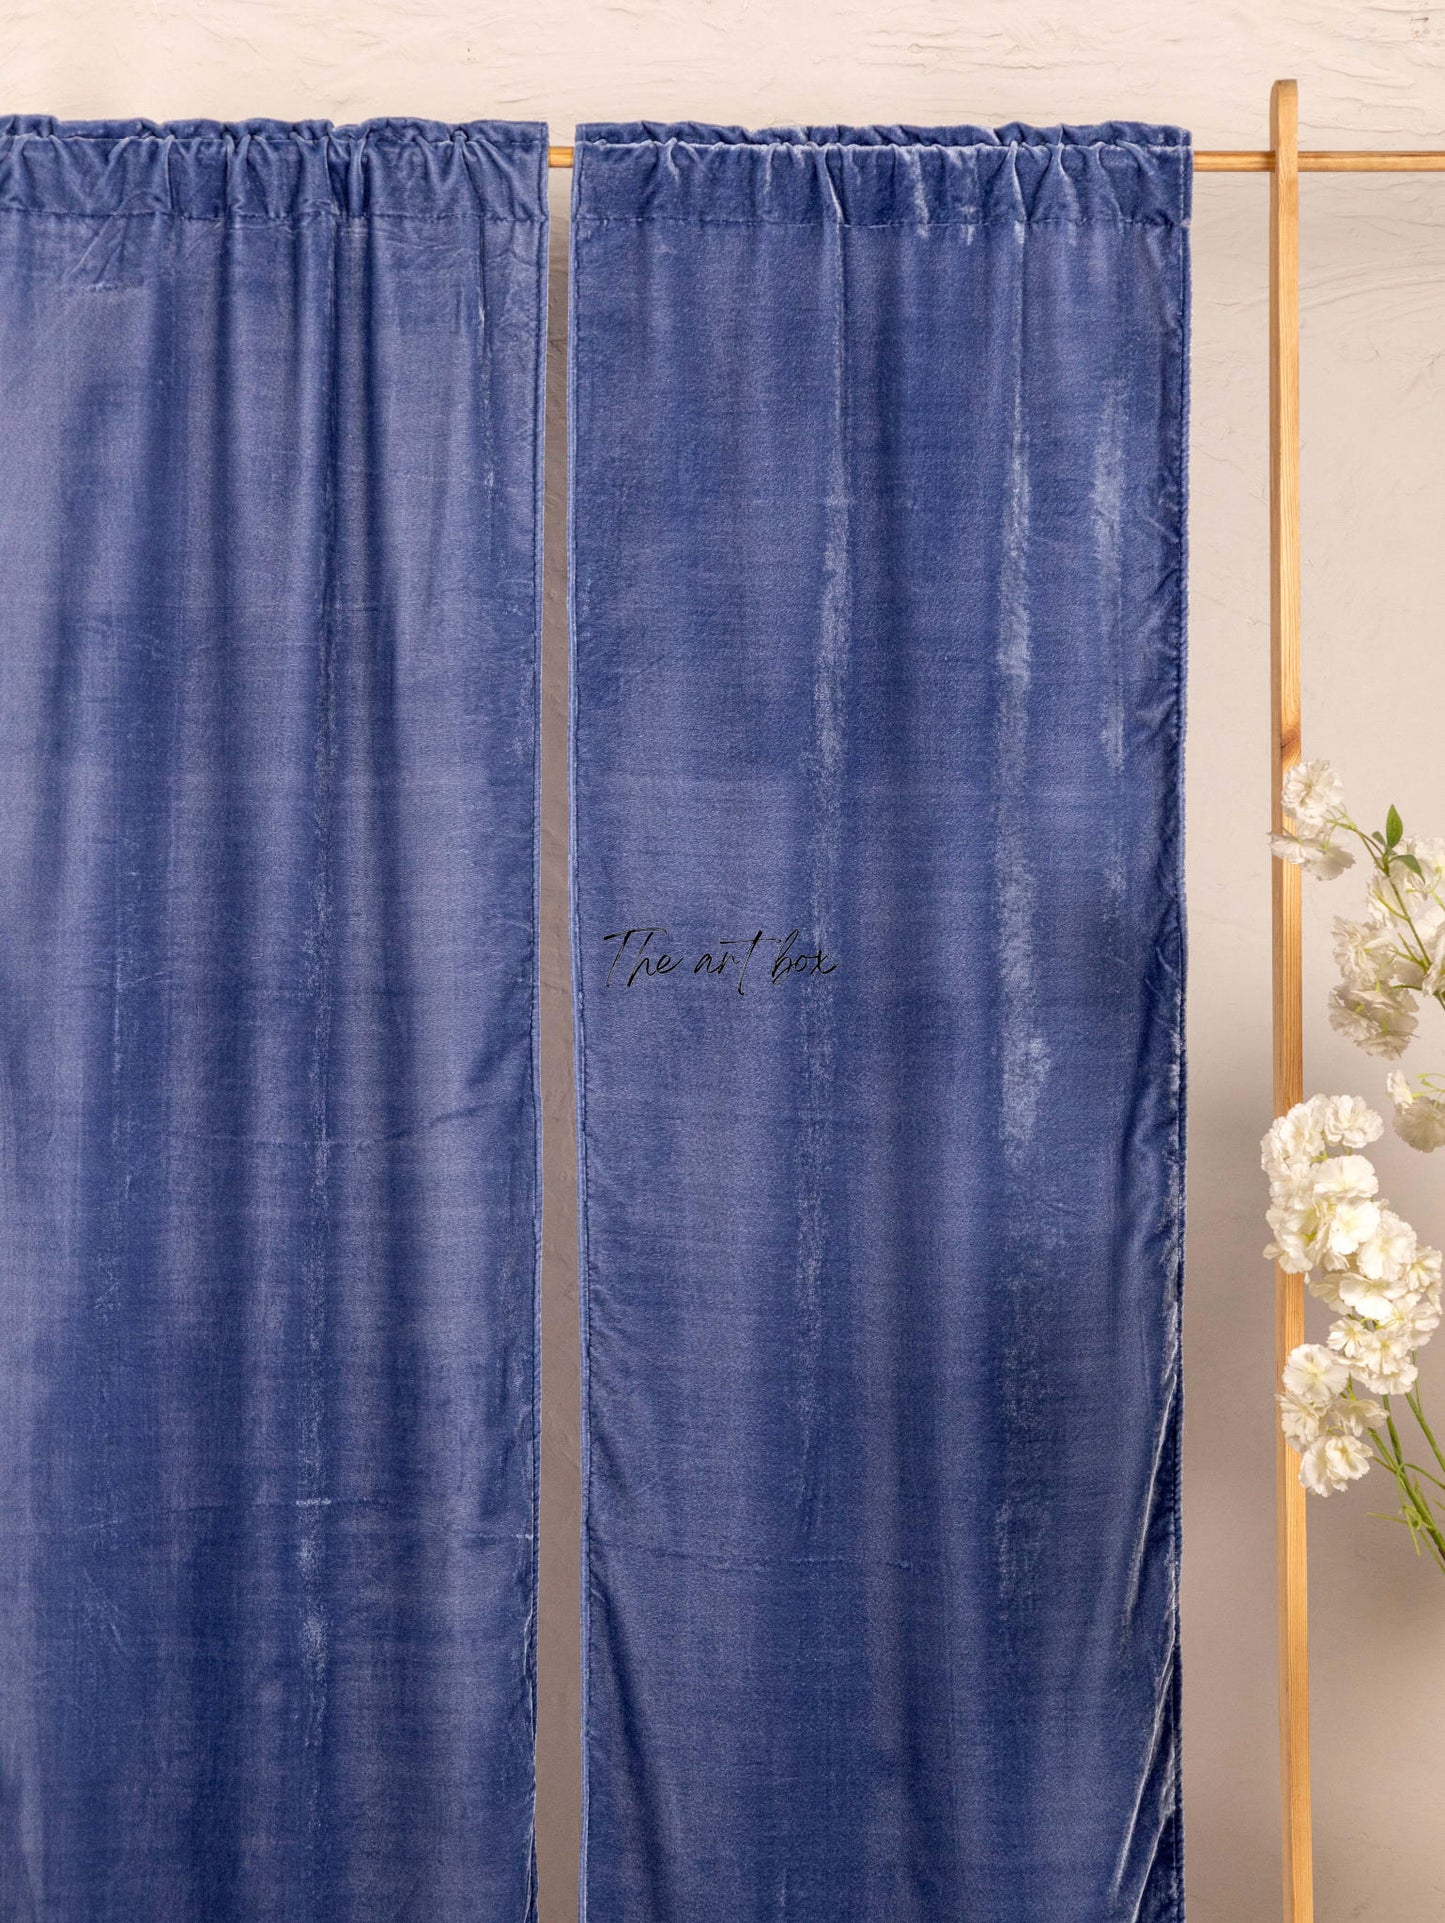 Blue Velvet Curtains - 2 panel set